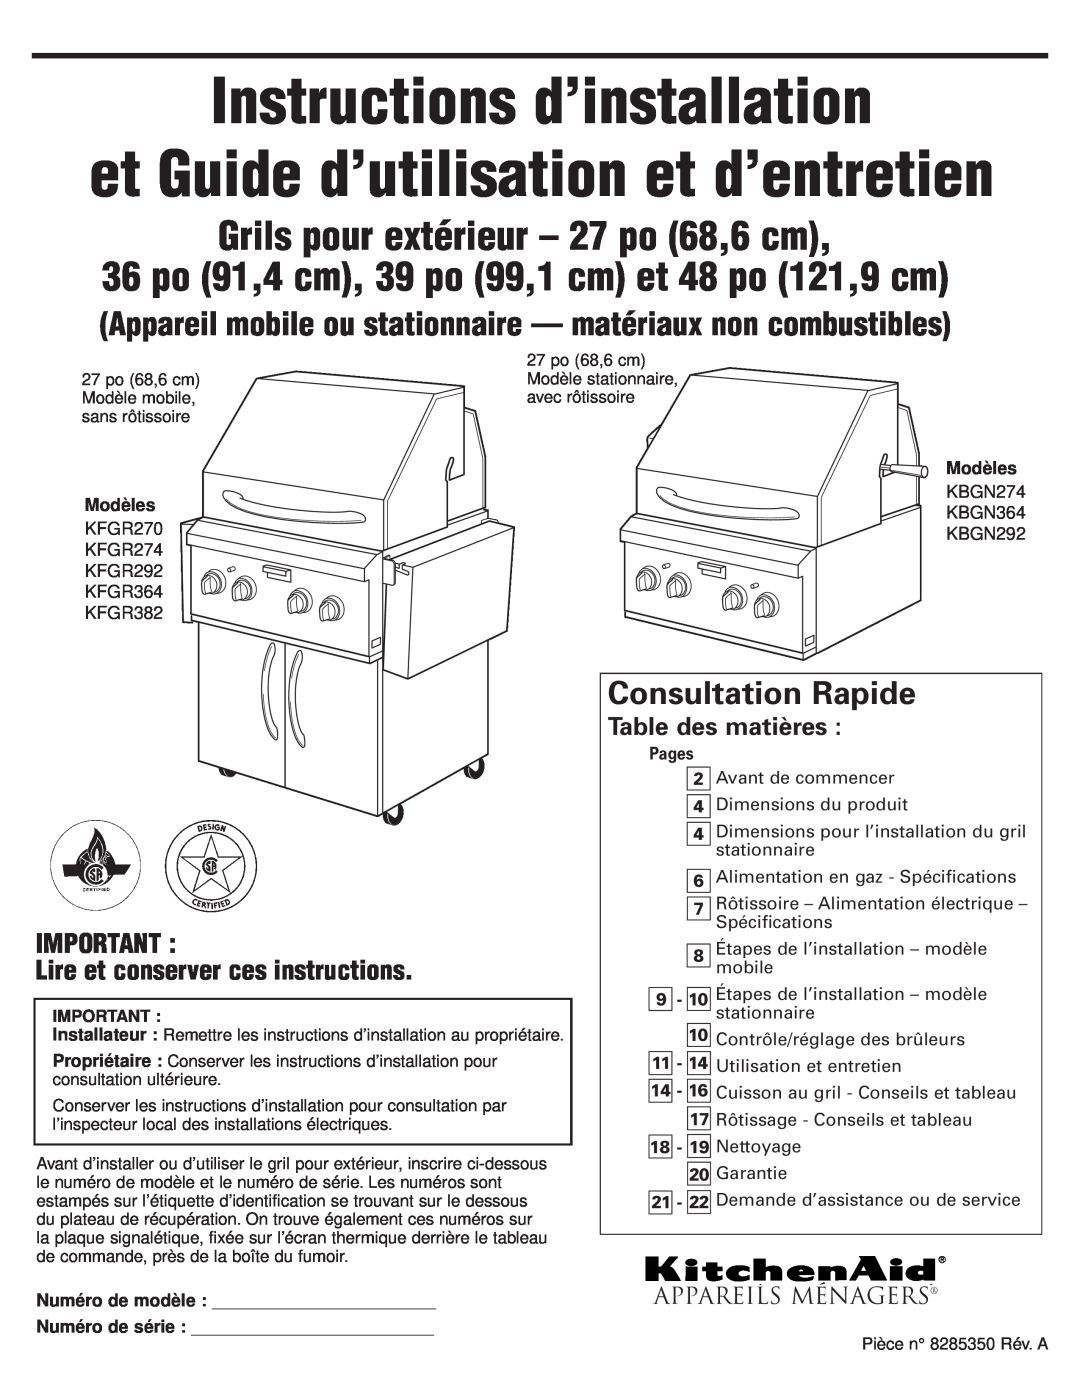 KitchenAid KFGR274 Instructions d’installation, Grils pour extérieur - 27 po 68,6 cm, Consultation Rapide, Modèles, Pages 